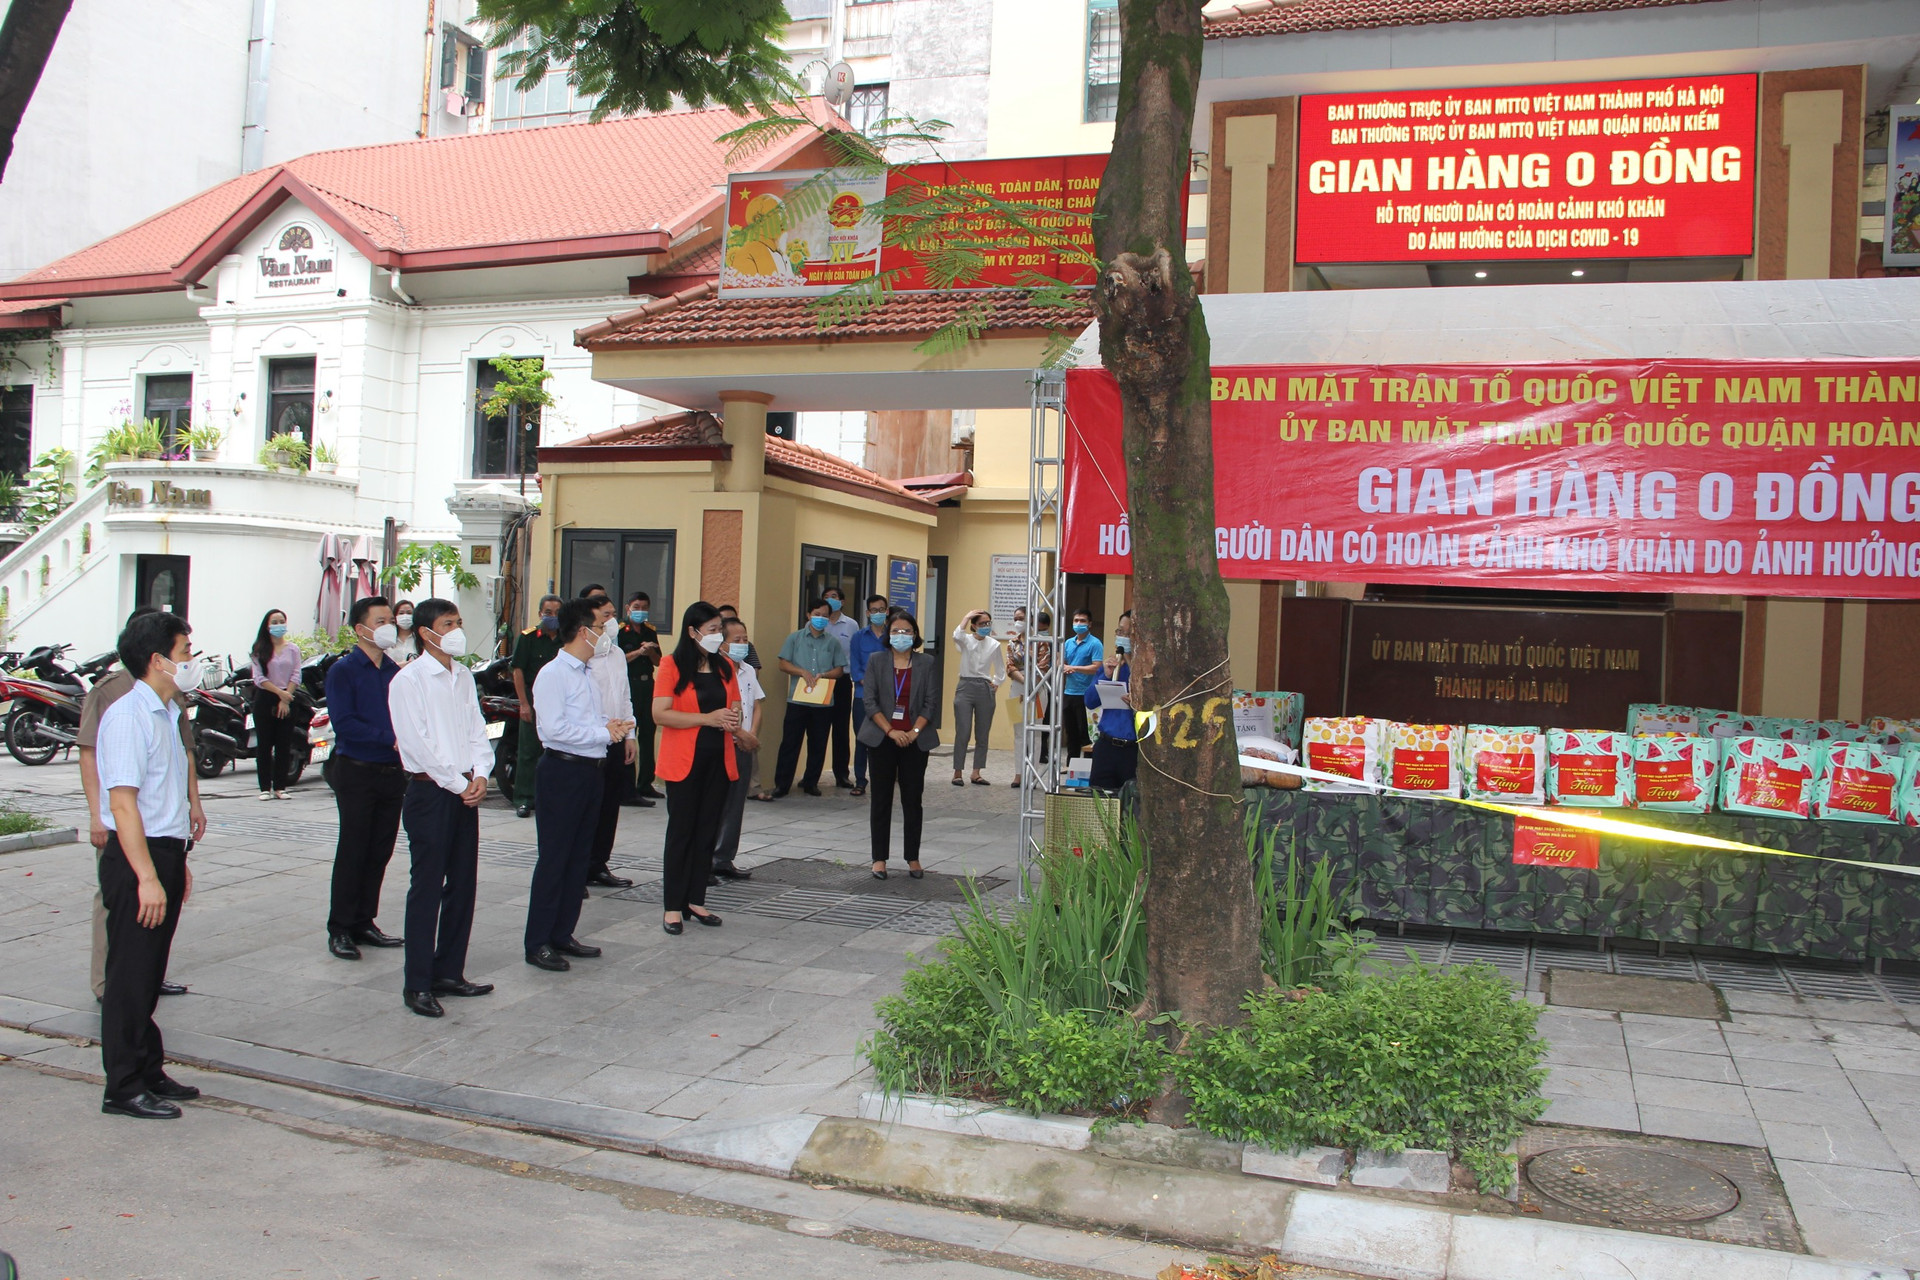 Ủy ban MTTQ thành phố Hà Nội phối hợp với Ủy ban MTTQ quận Hoàn Kiếm tổ chức chợ 0 đồng. 